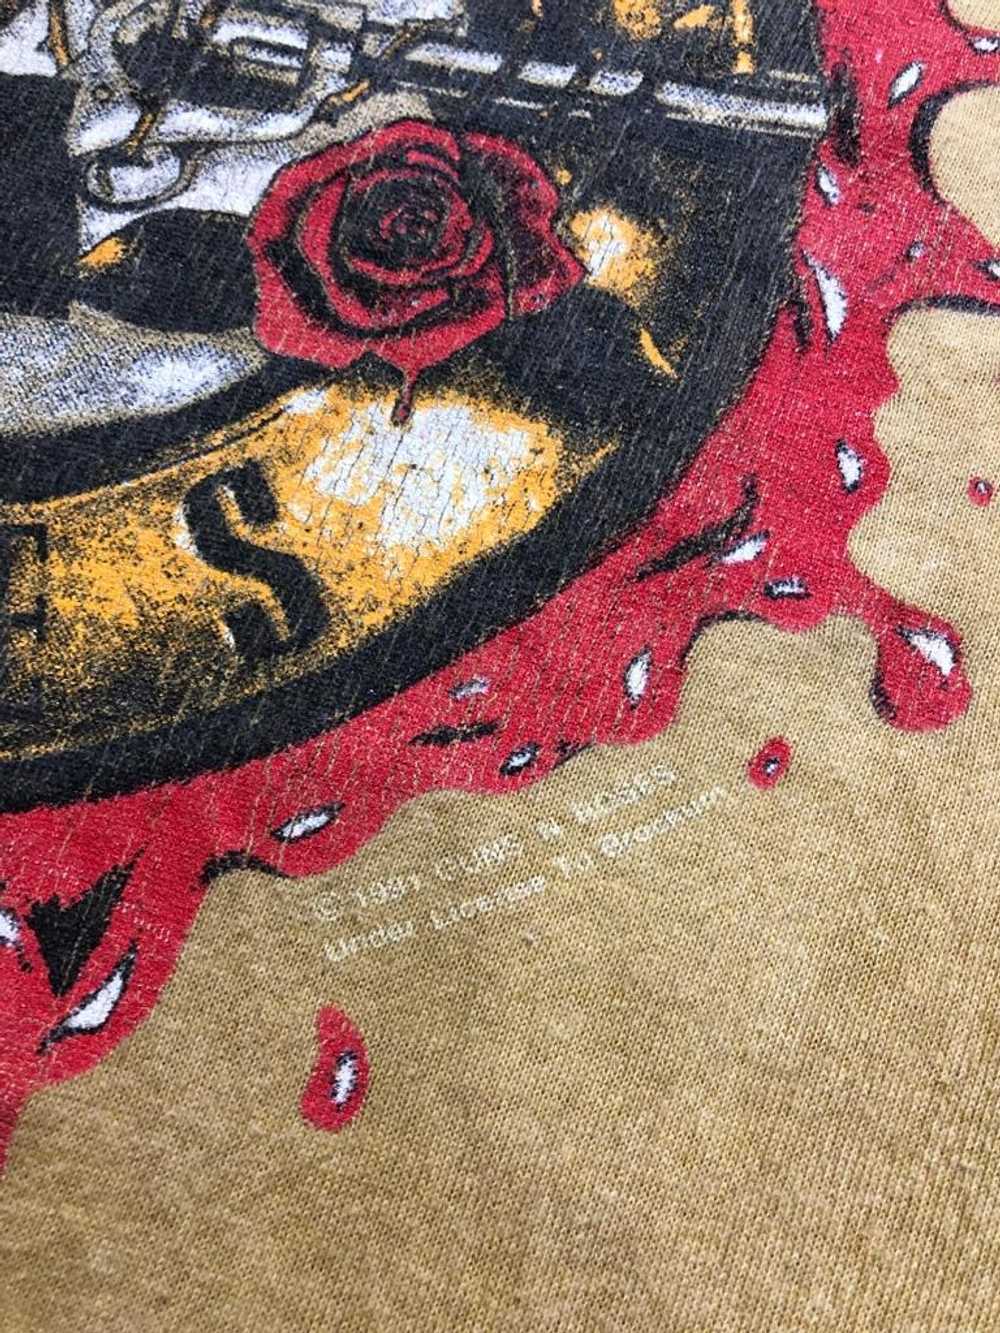 1991 Guns n Roses T Shirt - image 4